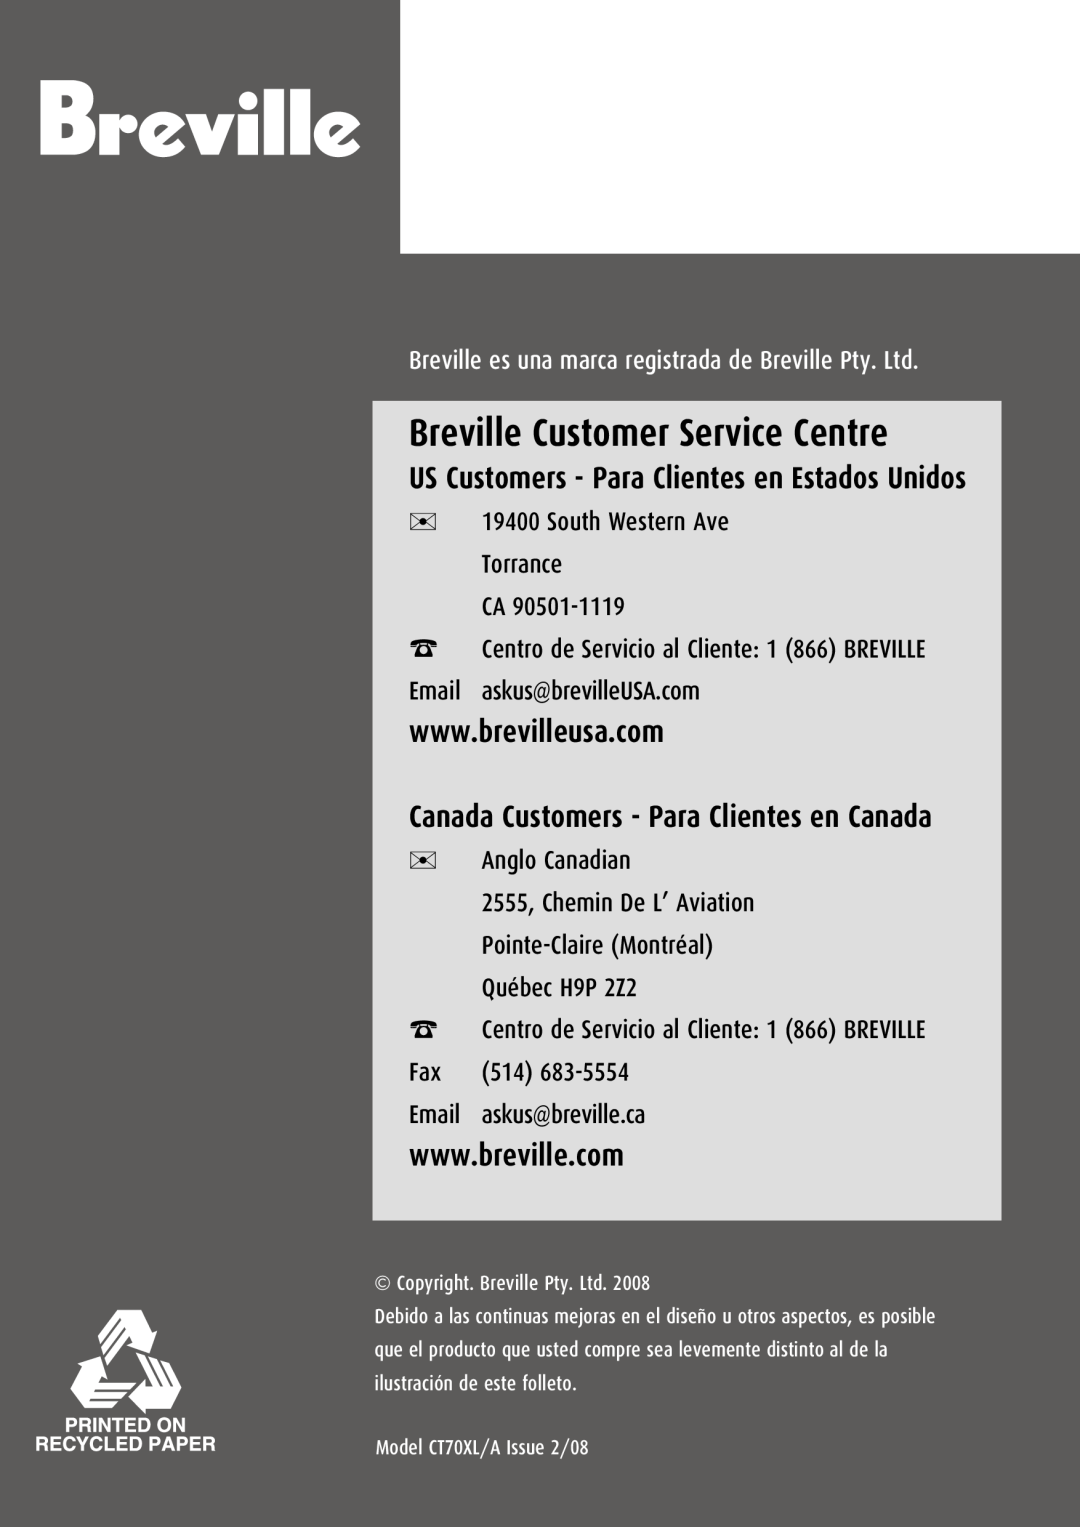 Breville CT70XL/A manual Breville Customer Service Centre, Canada Customers - Para Clientes en Canada 